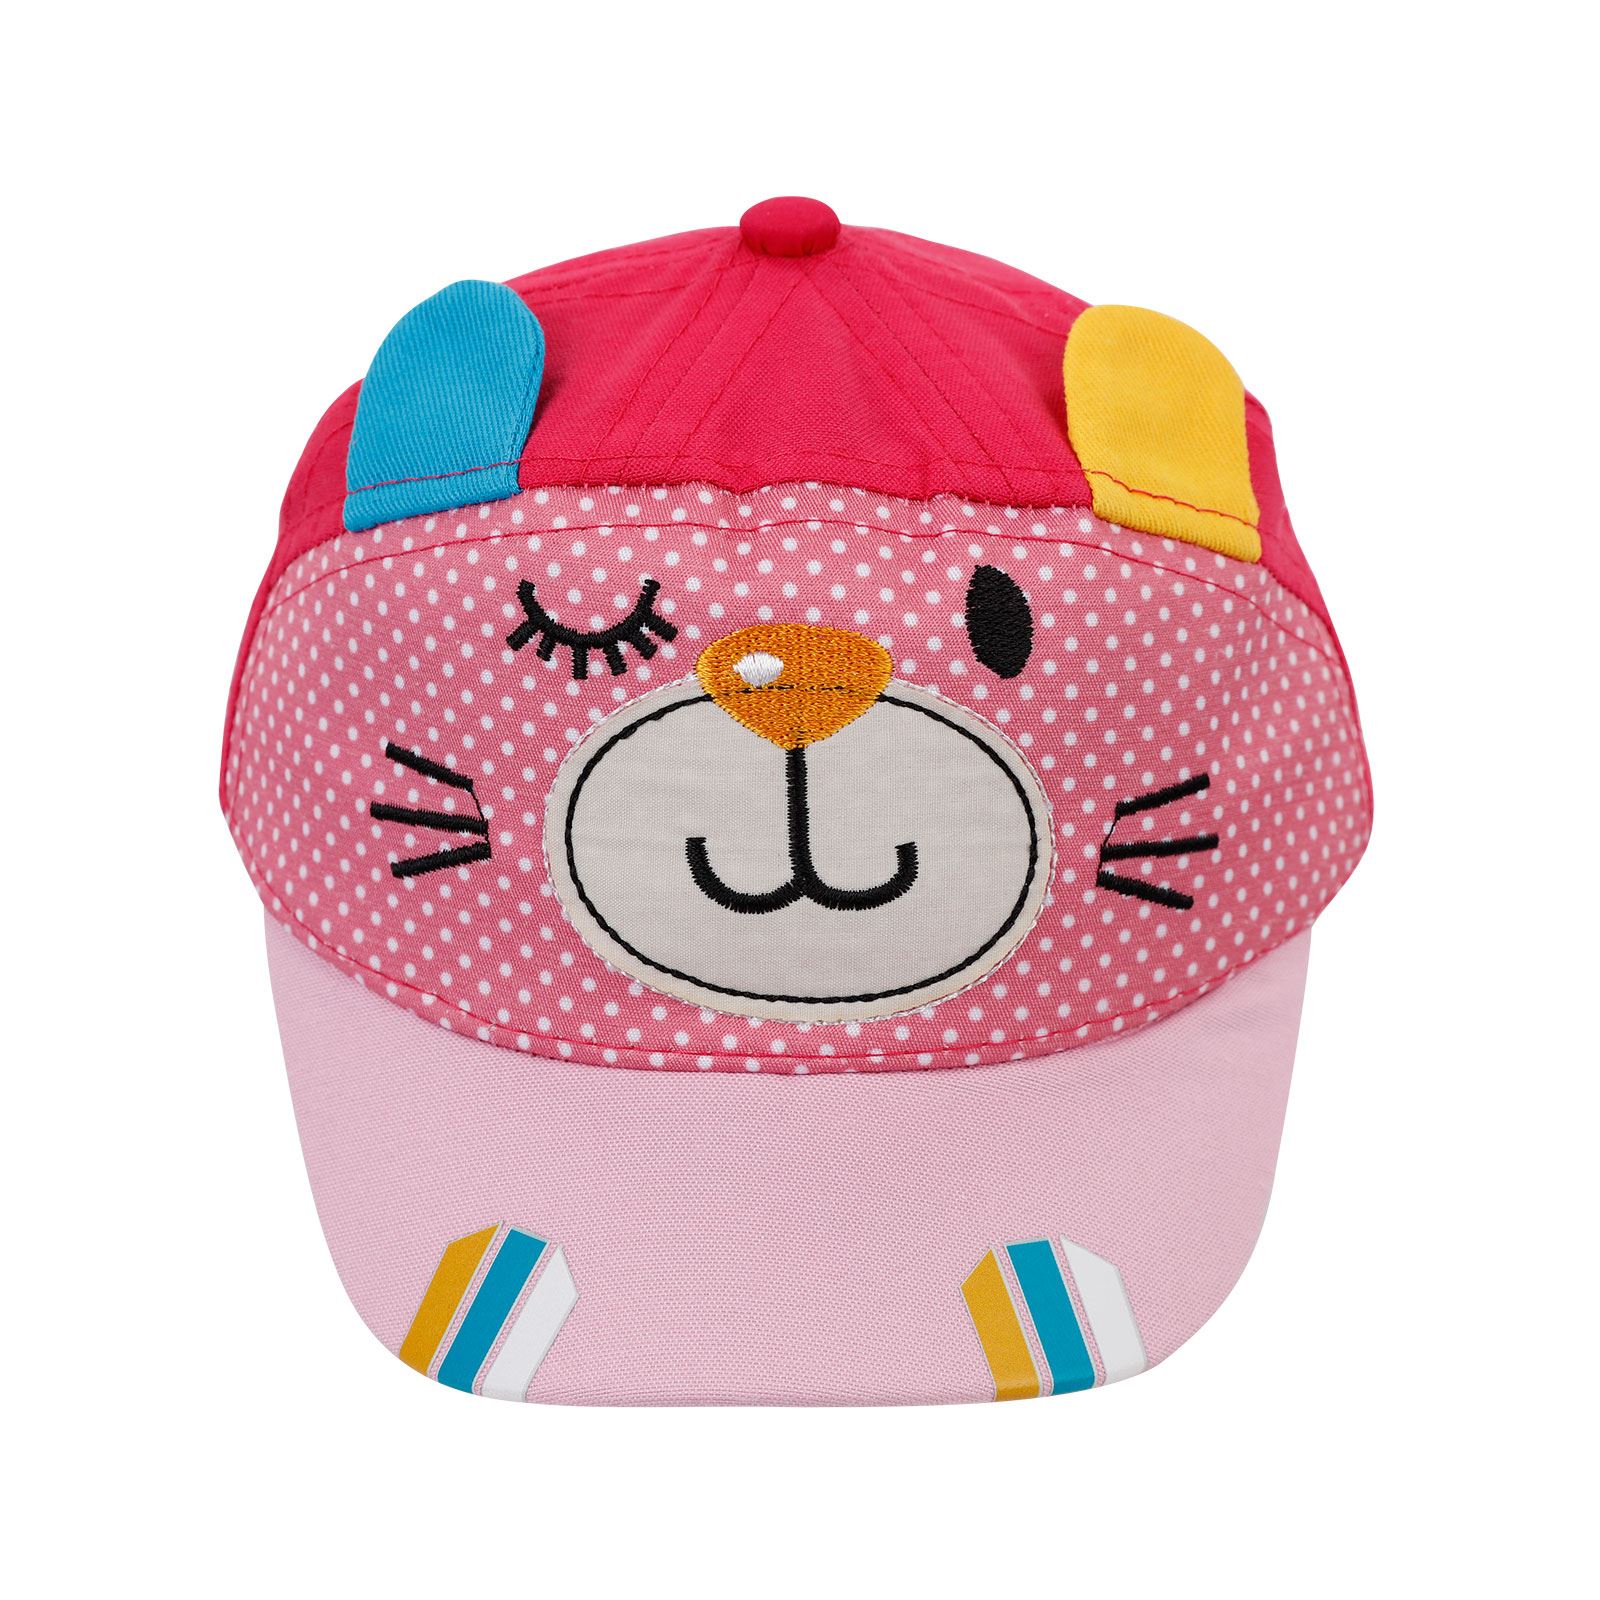 Civil Baby Kız Bebek Kep Şapka 0-24 Ay Fuşya